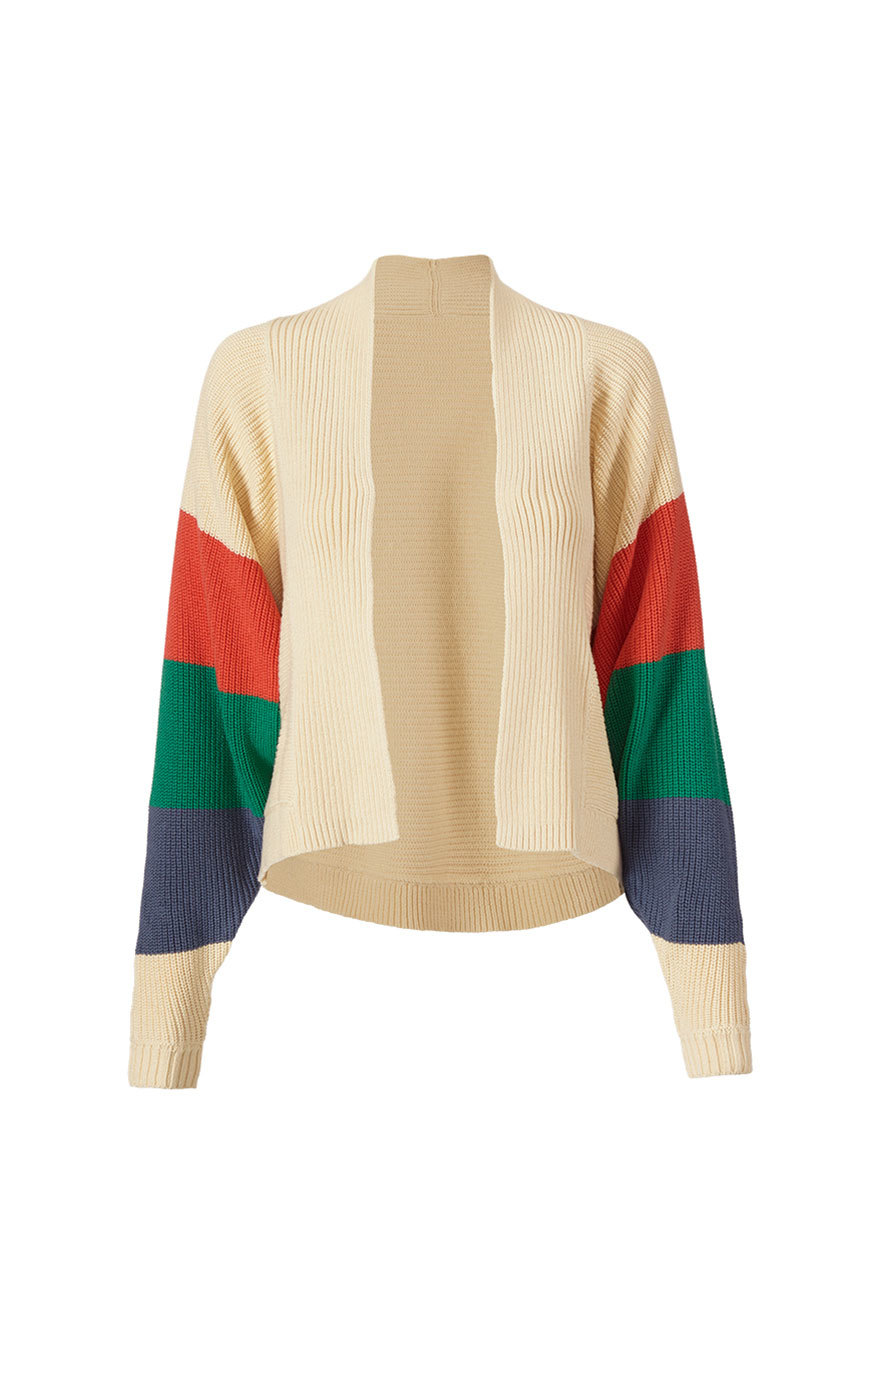 Trio Sweater | cabi clothing